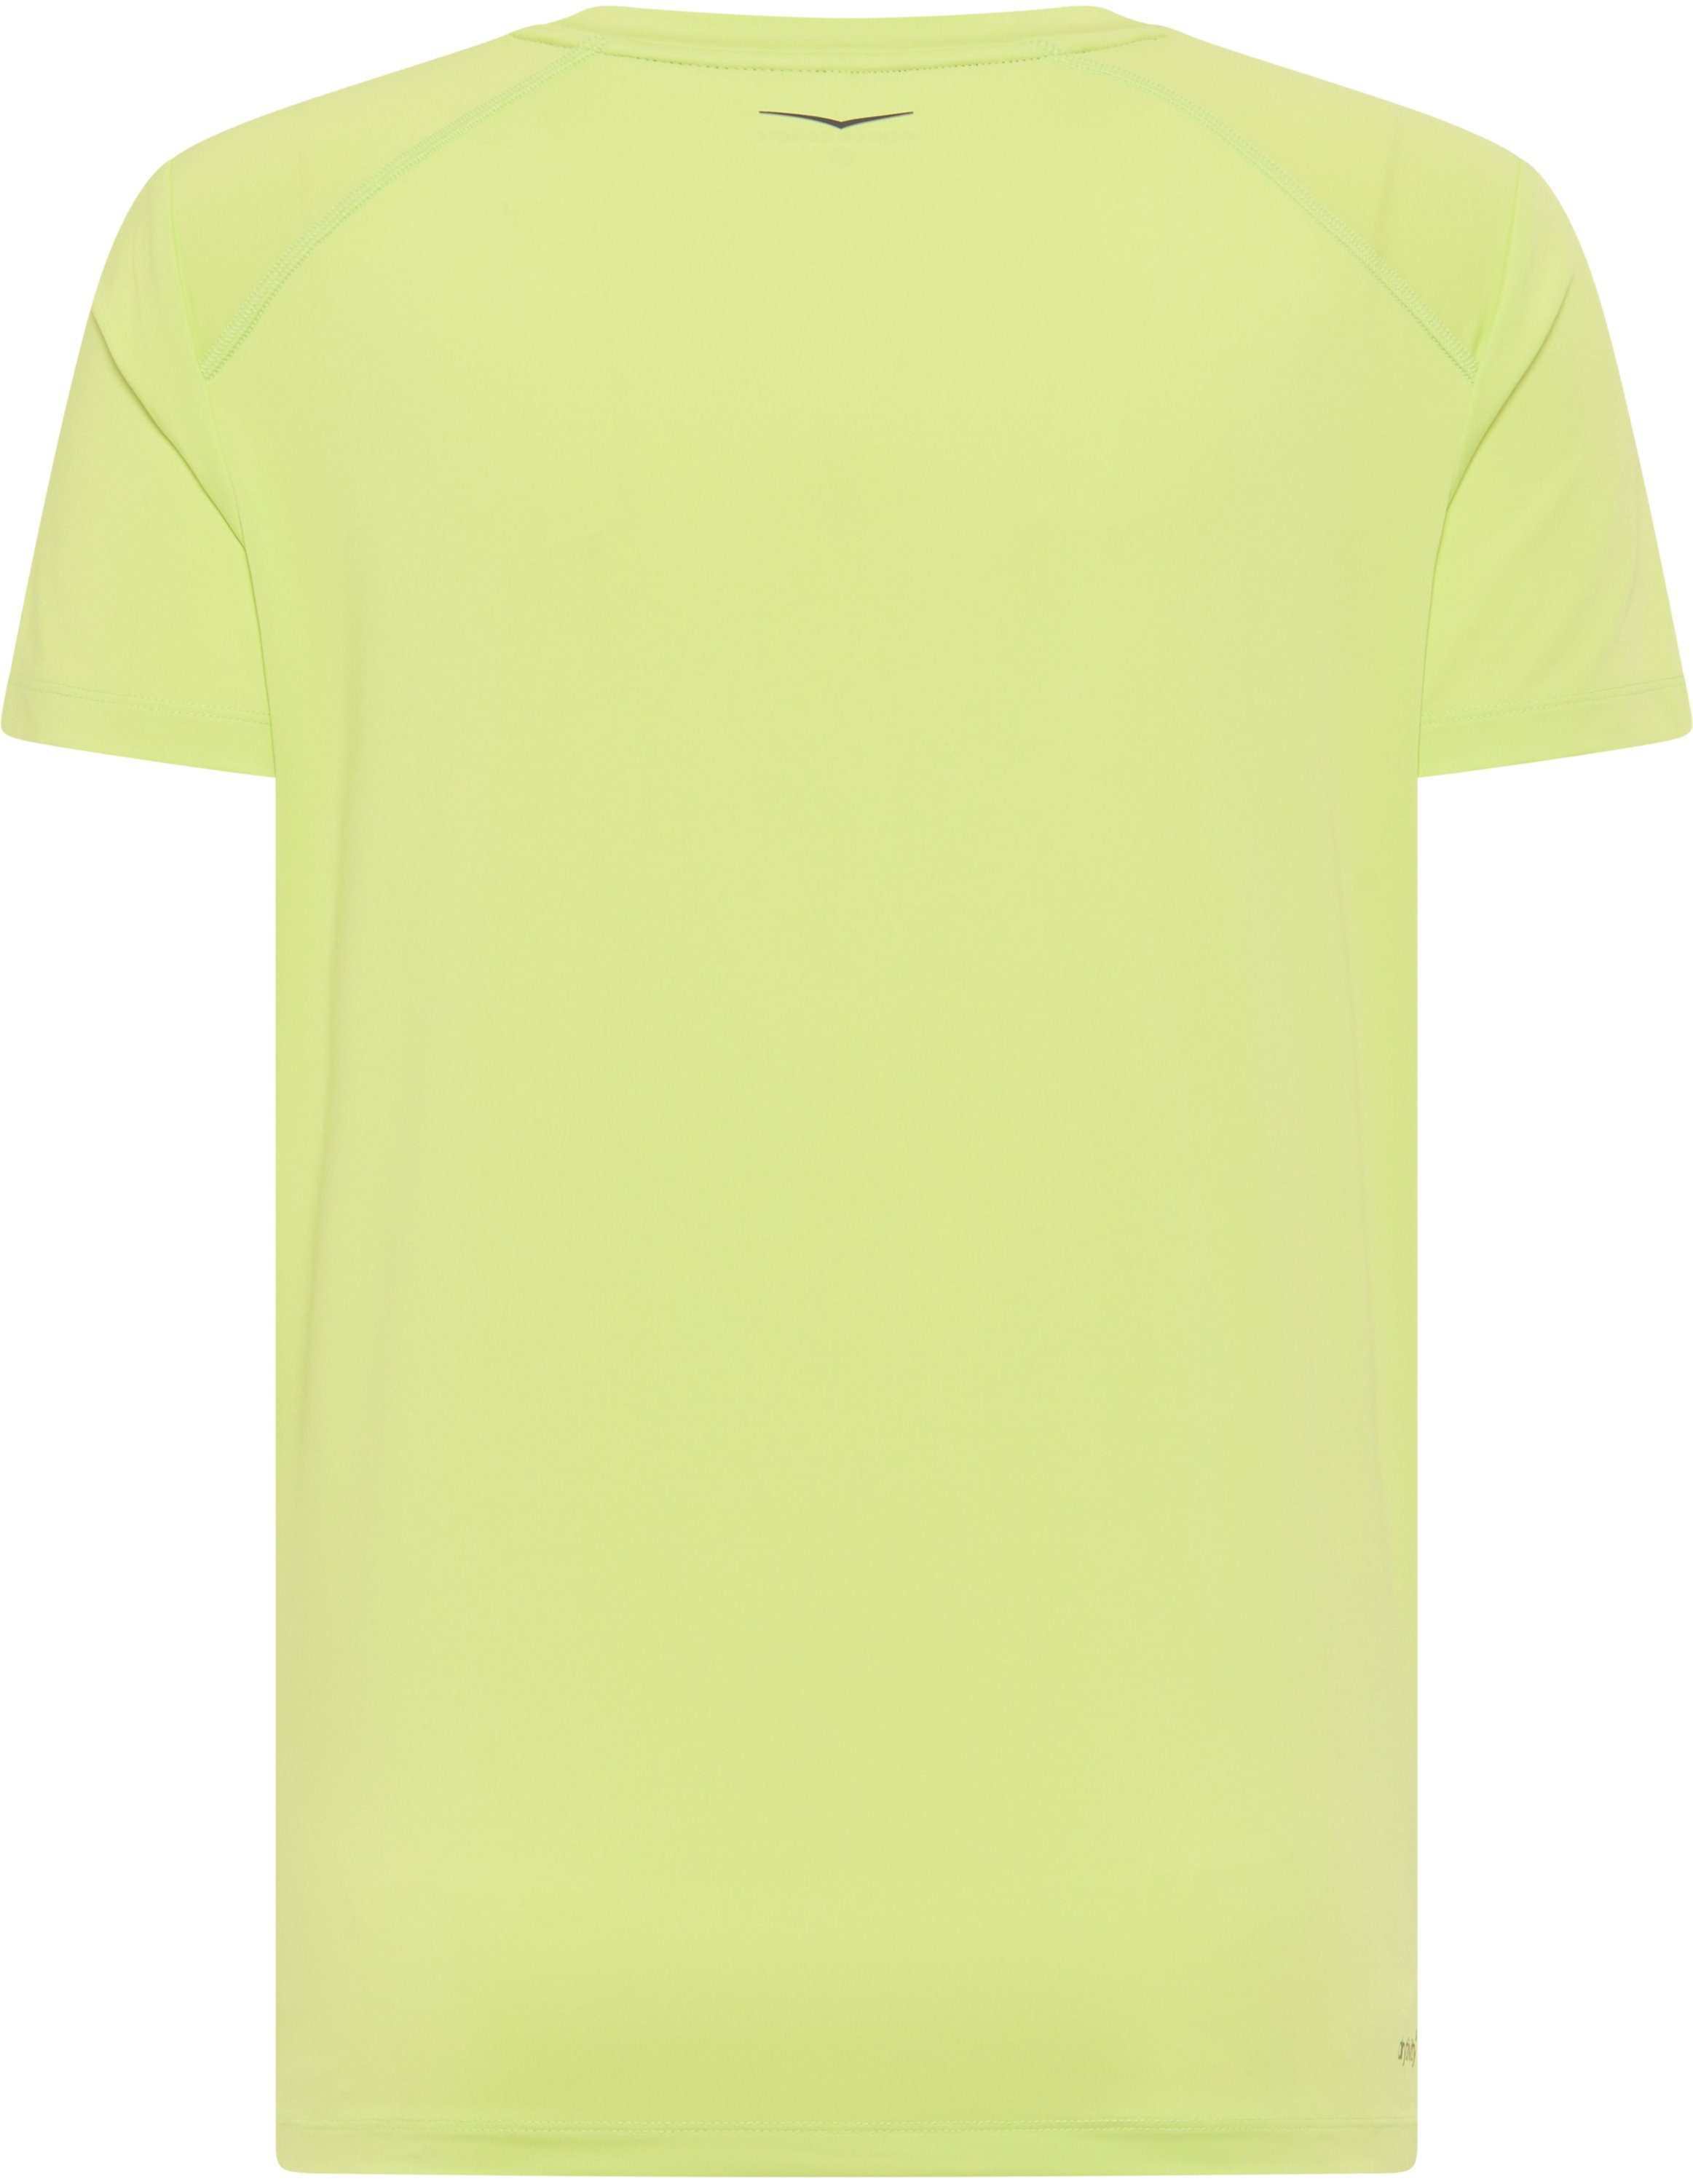 Venice Beach Men lime T-Shirt light T-Shirt HAYES VB